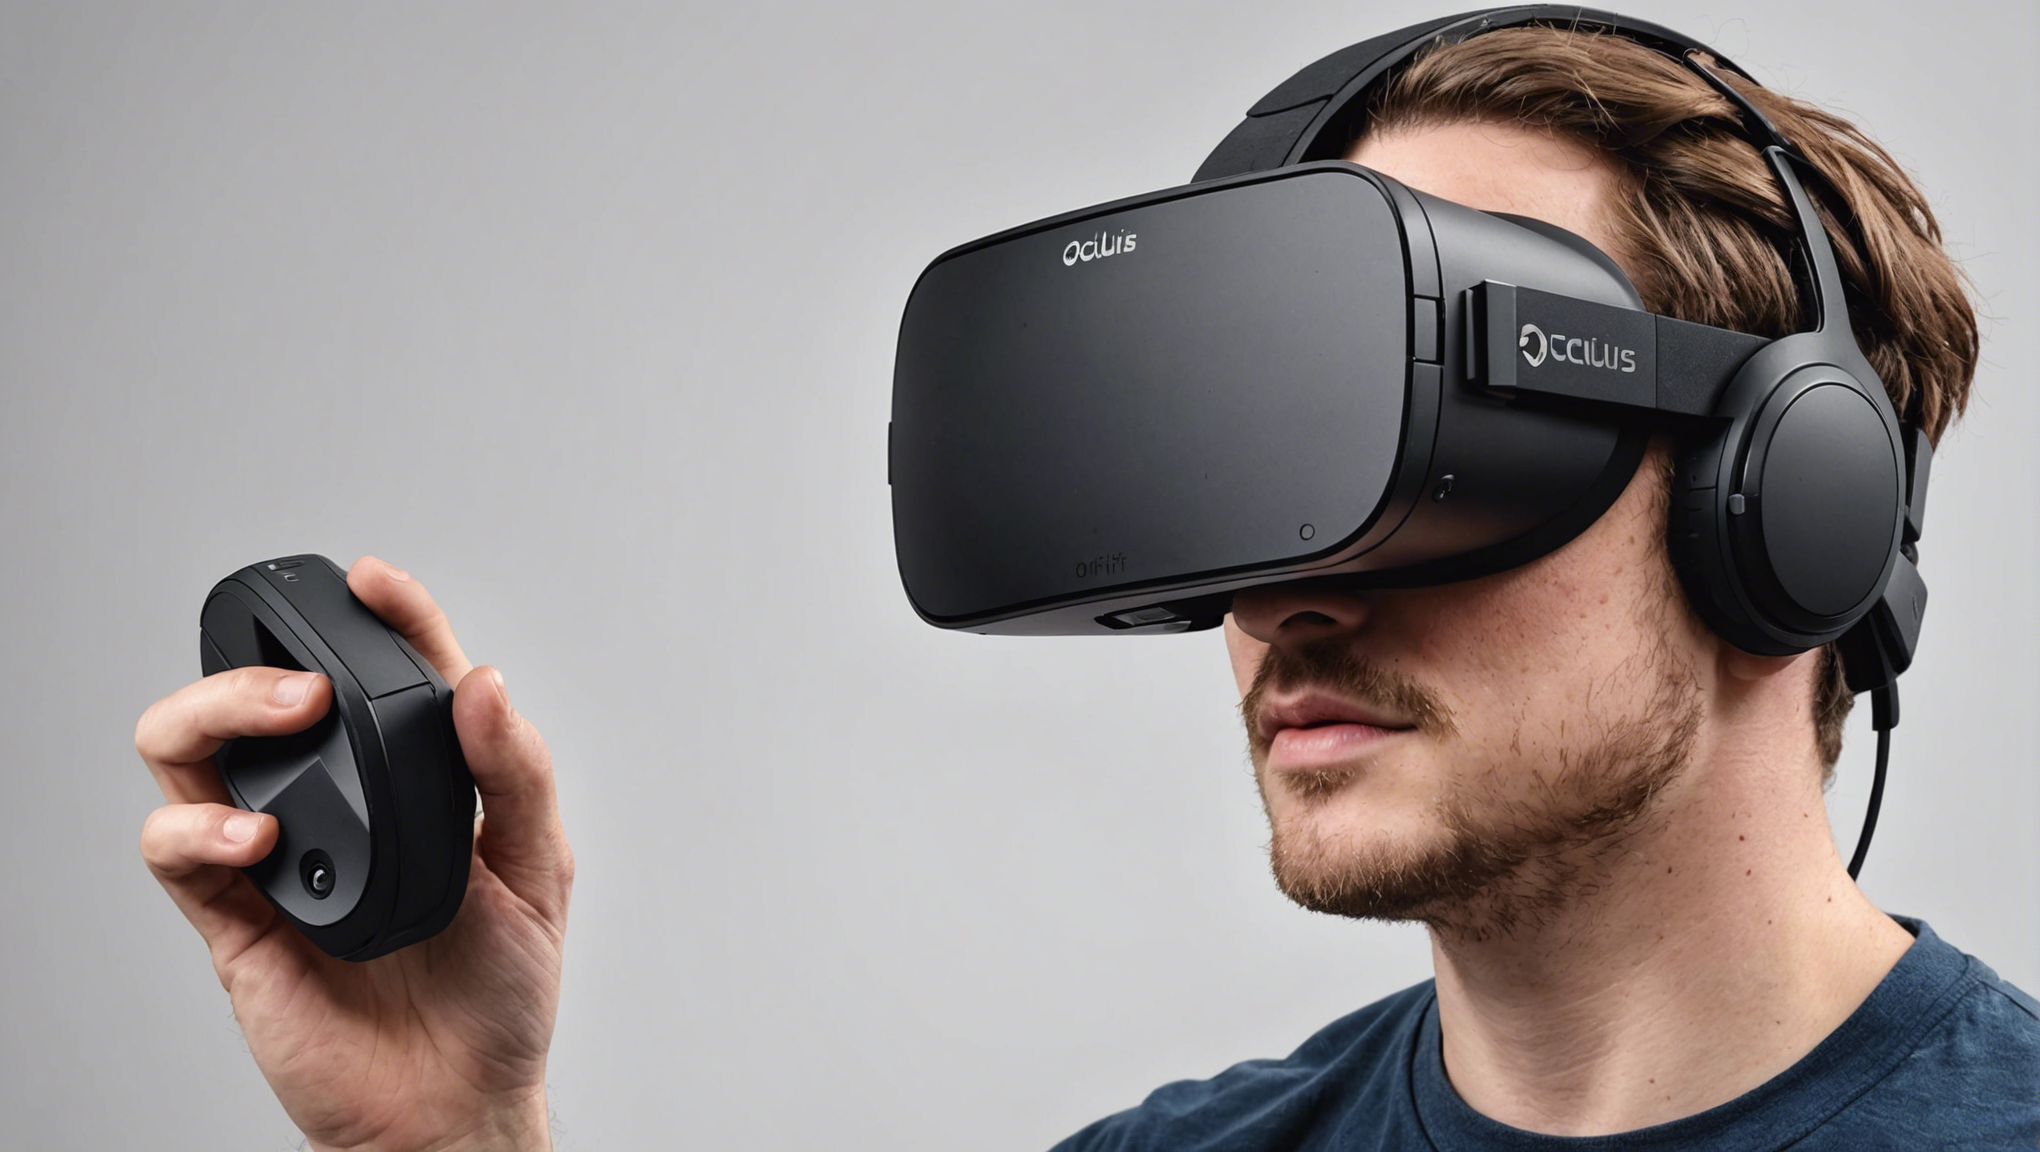 découvrez ce qu'est l'oculus rift, un casque de réalité virtuelle révolutionnaire, et plongez dans des expériences immersives uniques.